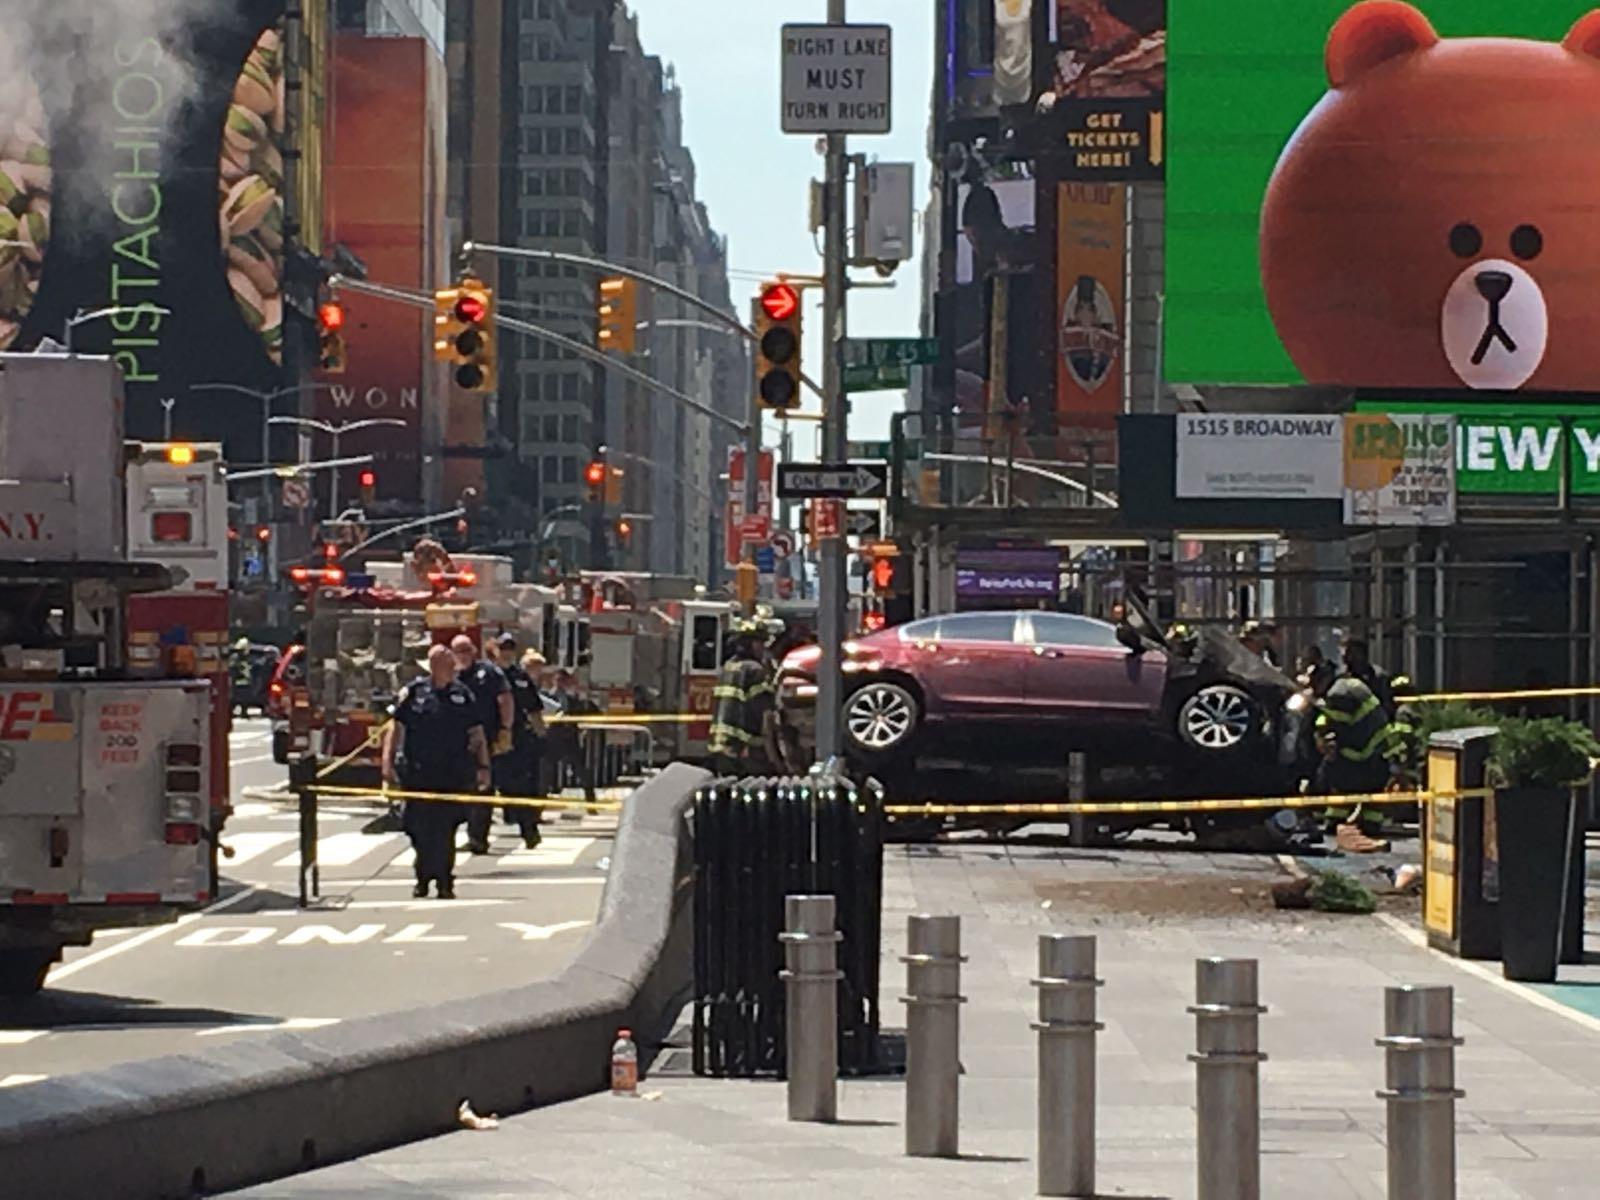 ++ New York: polizia conferma almeno 1 morto, 20 feriti ++